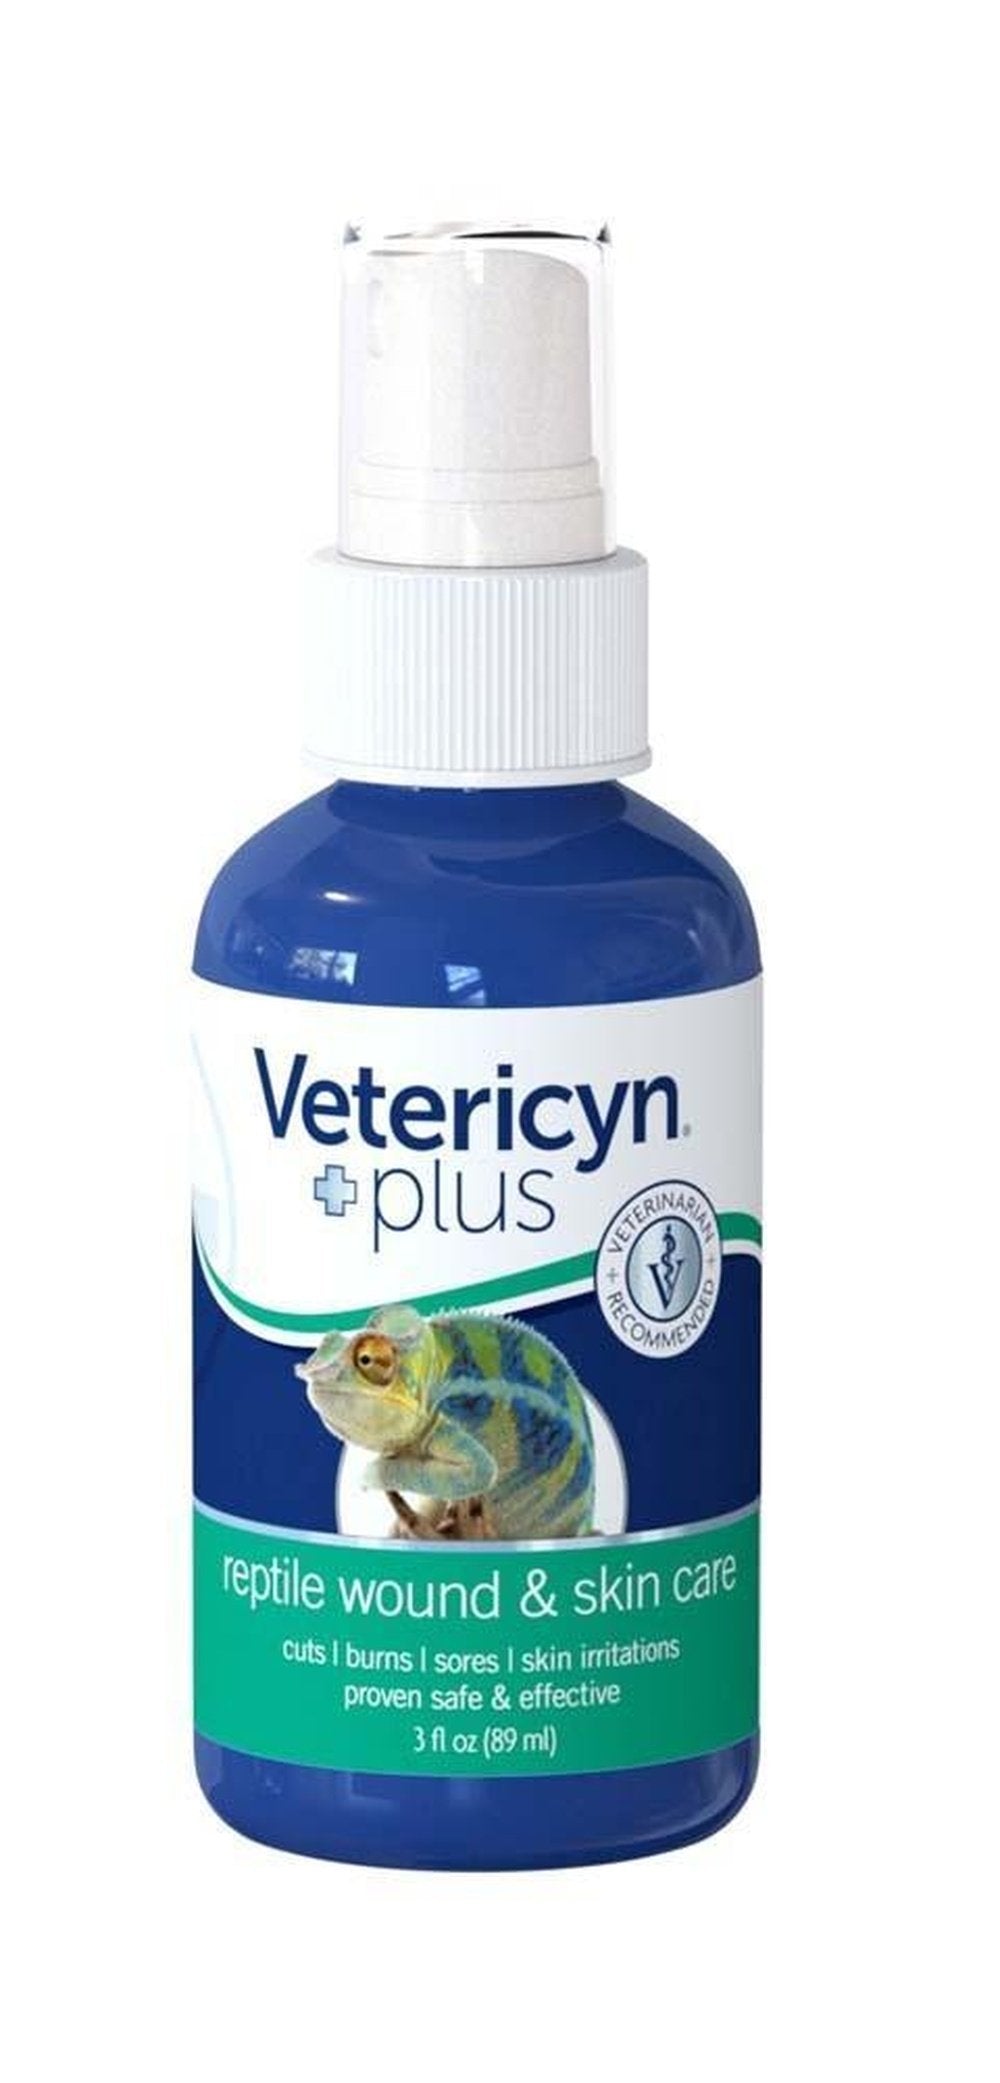 Vetericyn Plus Reptile Wound & Skin Care 3oz